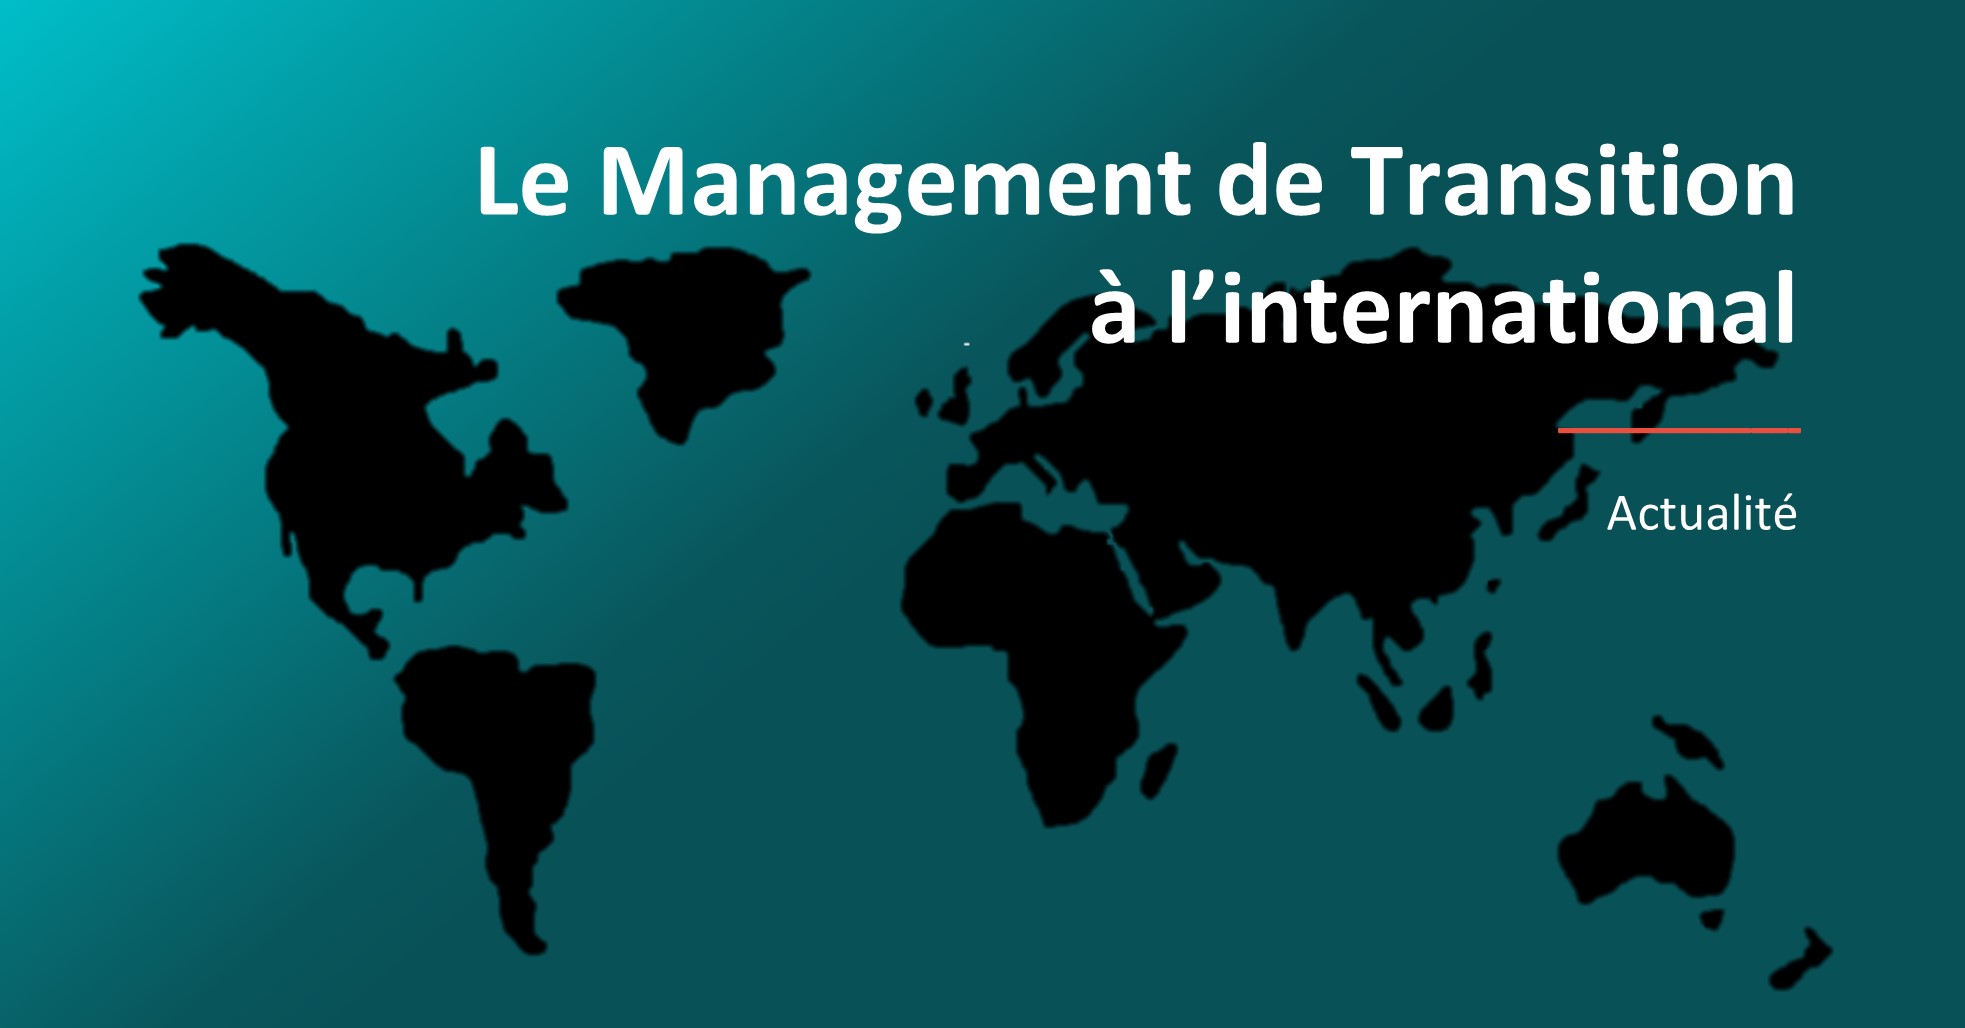 La grande enquête de NIM Europe sur le Management de Transition à l'international